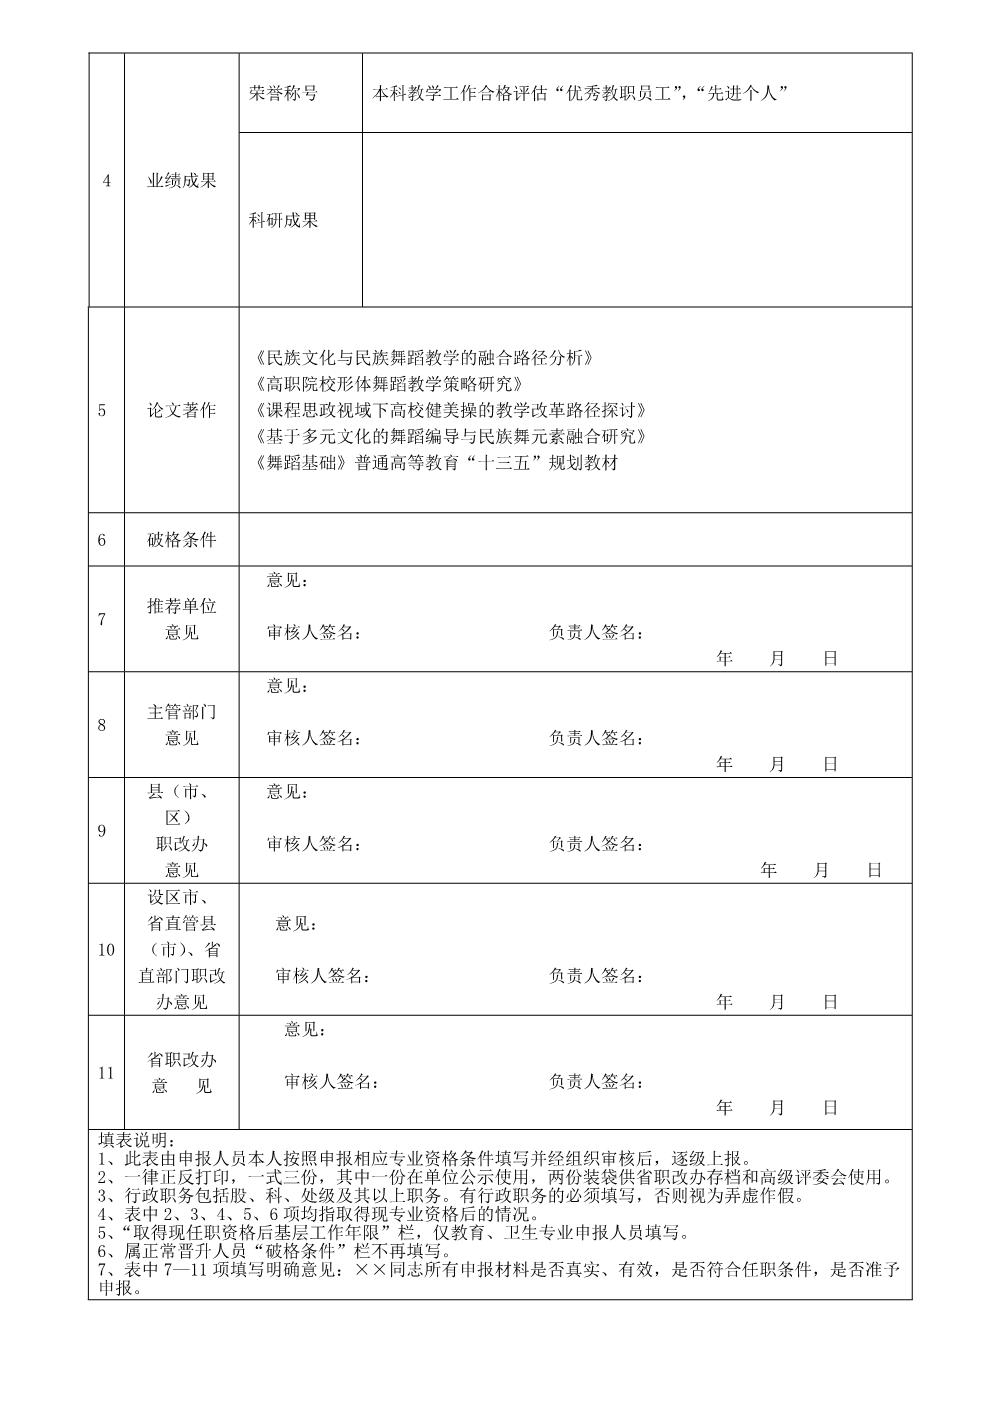 杨思雨2022年任职资格情况一览表